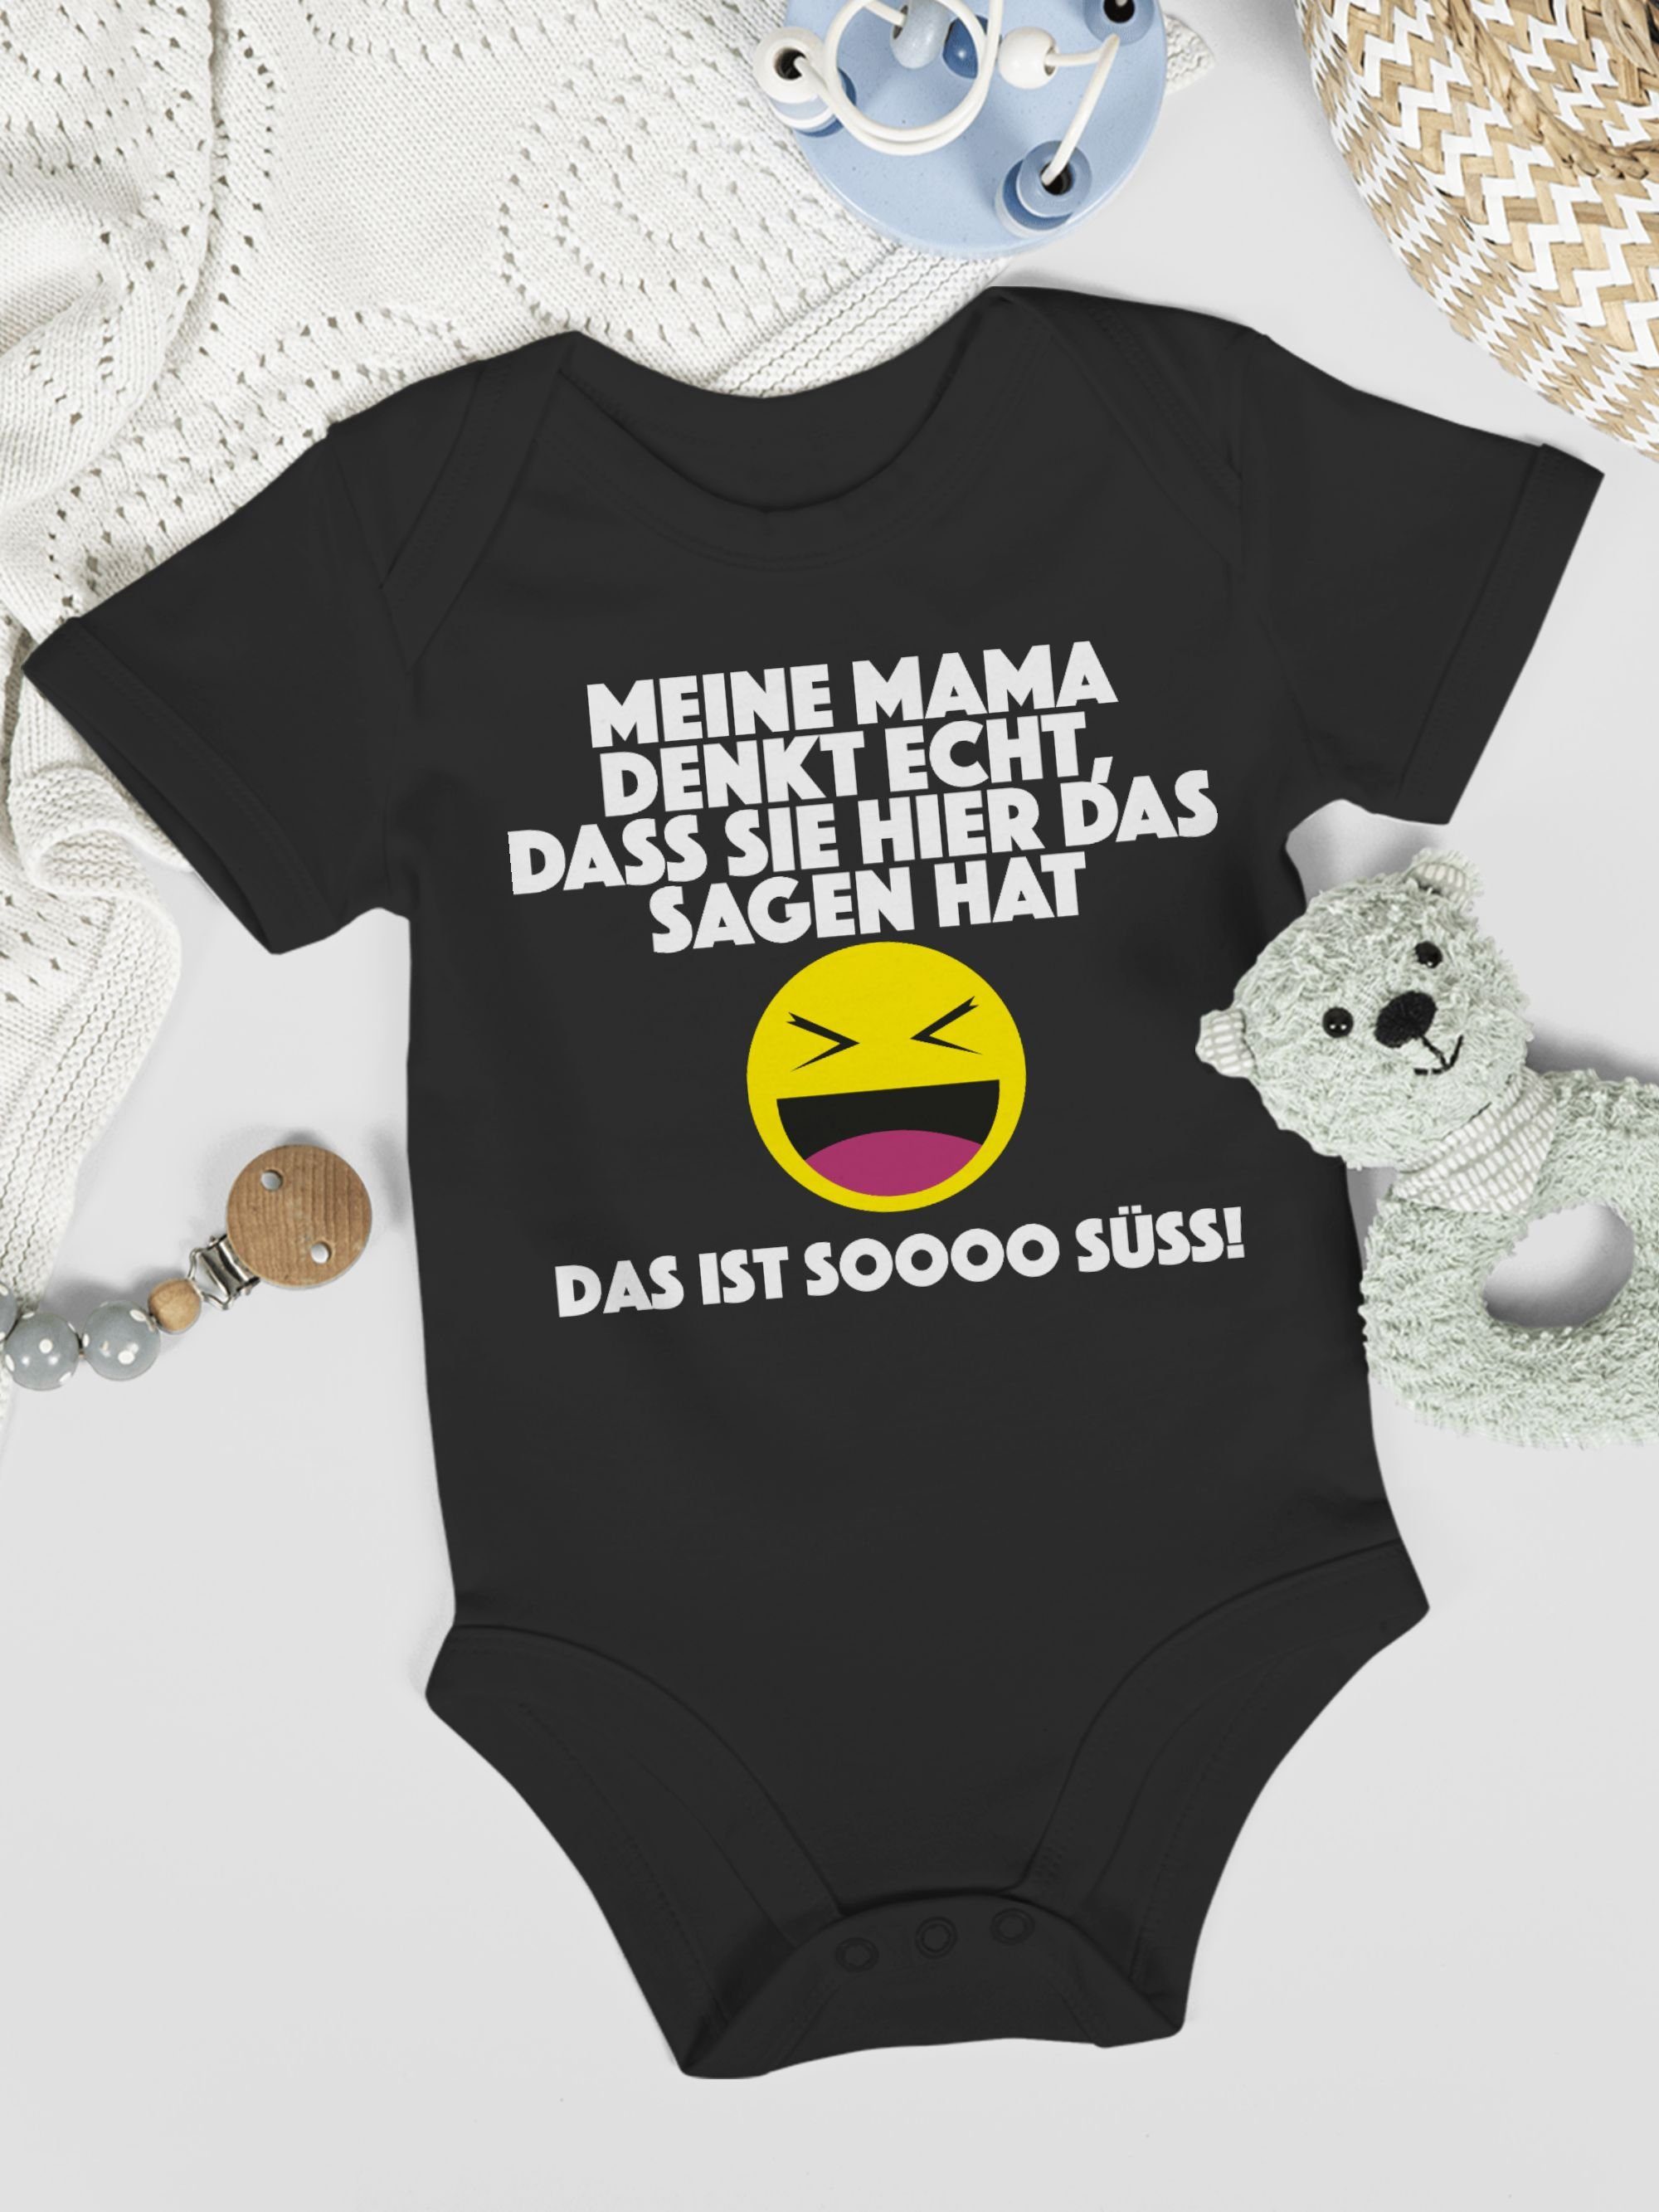 echt, das Meine sagen 1 dass Baby ist Schwarz Mama hat. sie - Das hier Sprüche Shirtracer Emoticon Shirtbody denkt